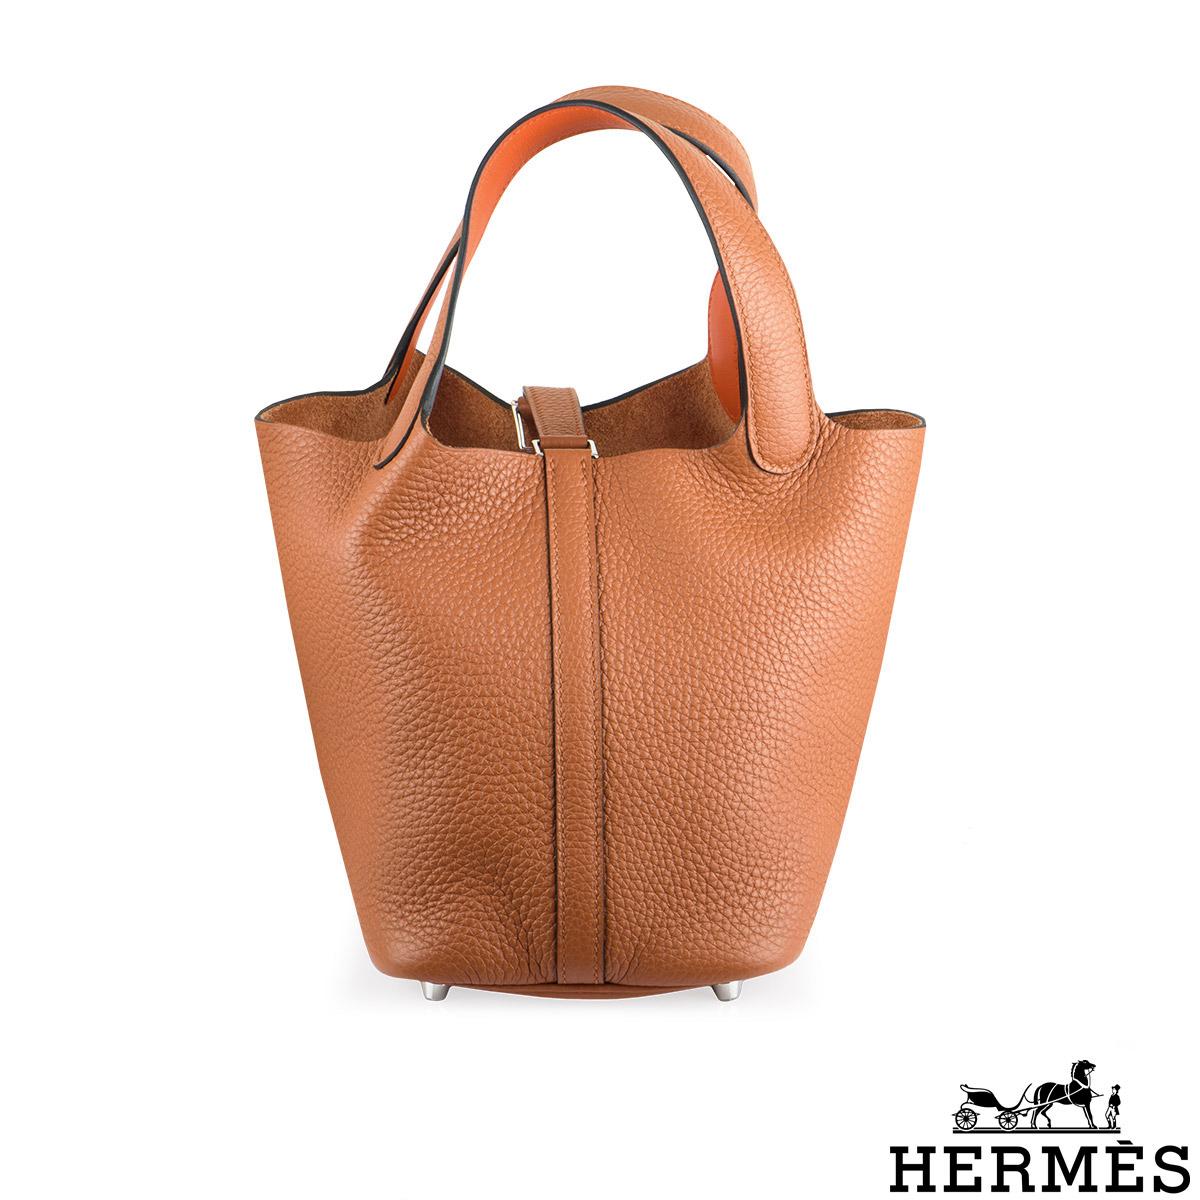 Hermes Picotin 22 - 14 For Sale on 1stDibs